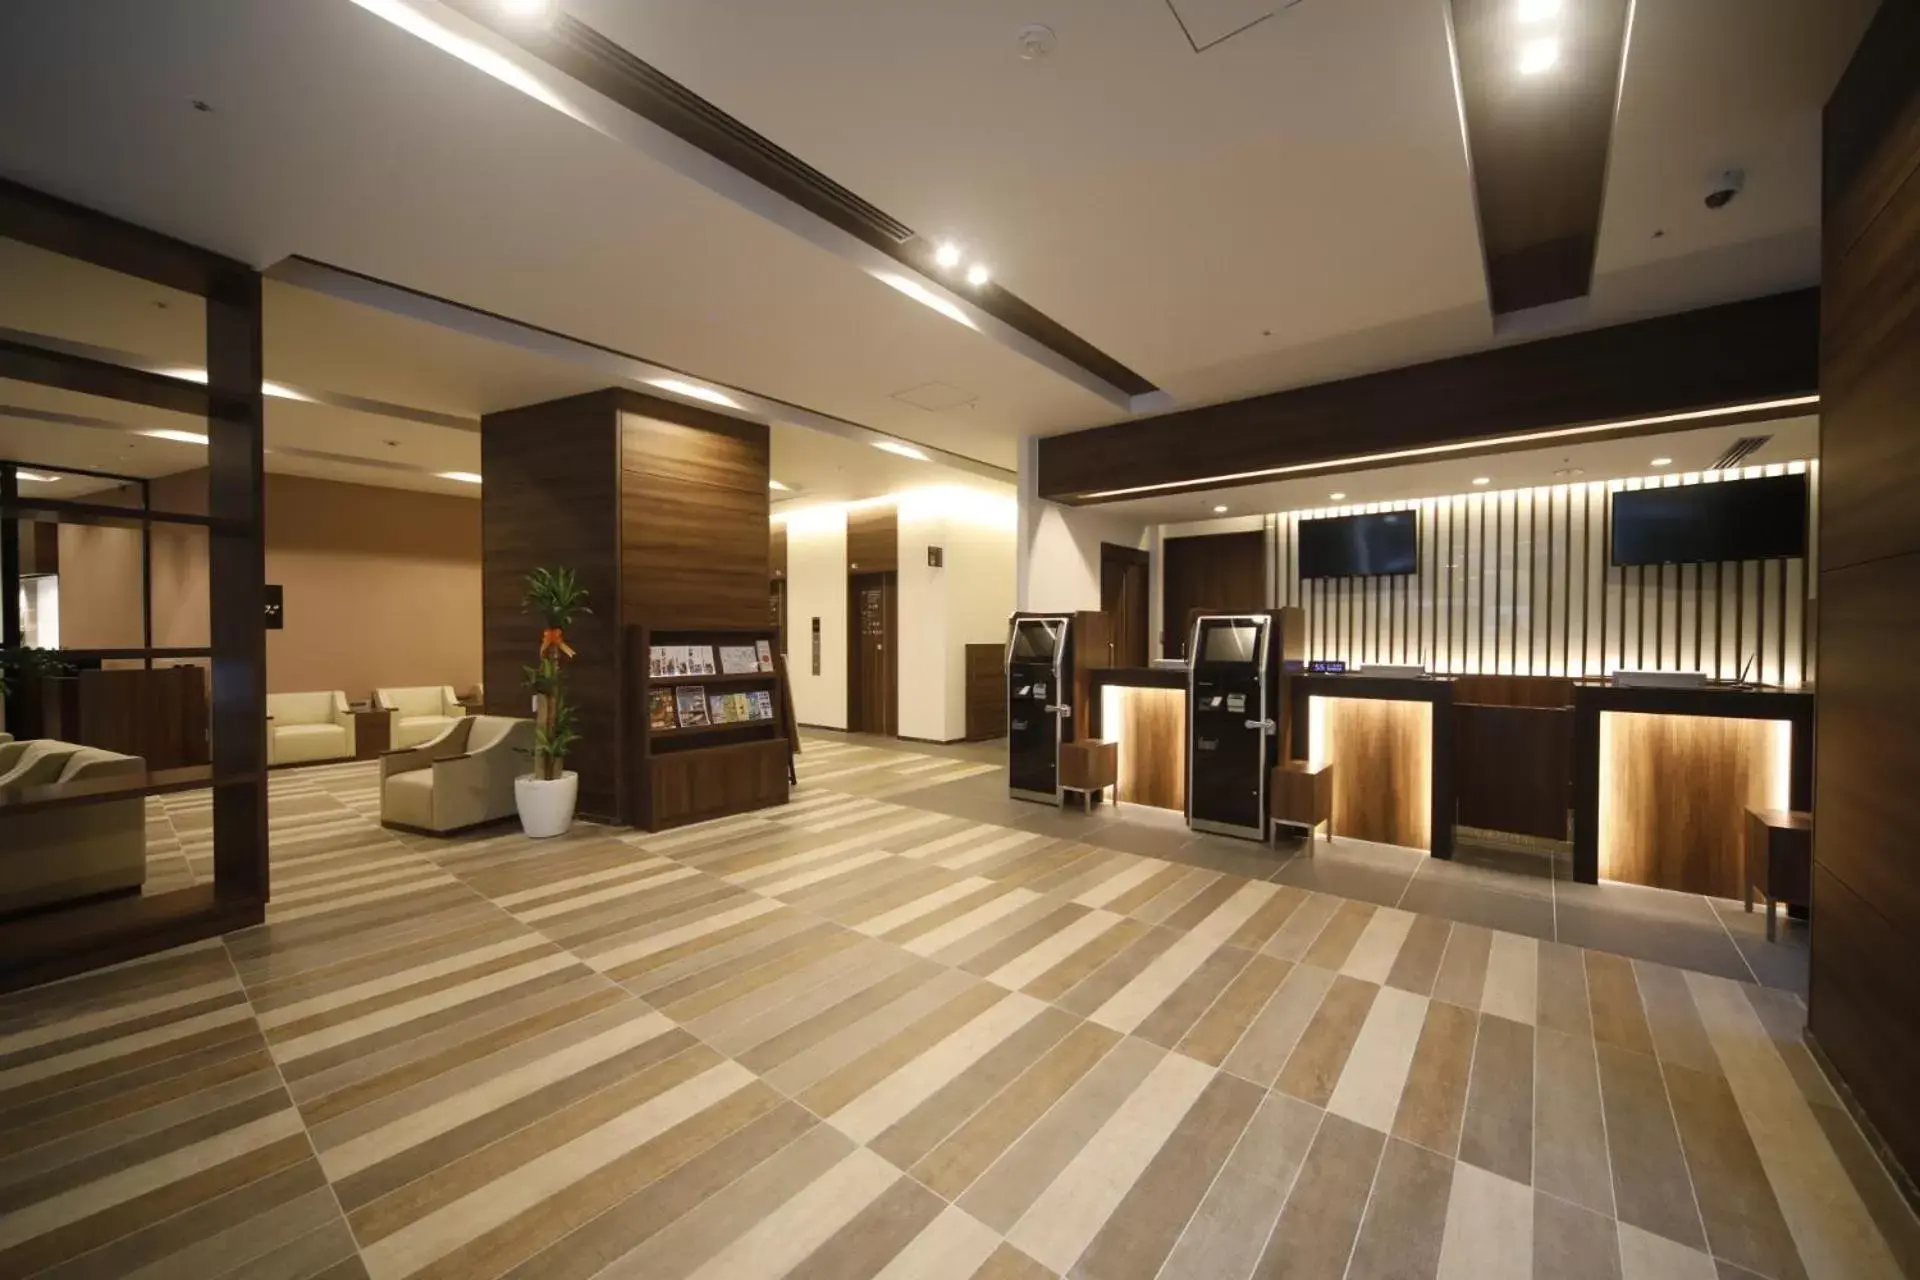 Lobby or reception, Lobby/Reception in Dormy Inn Oita